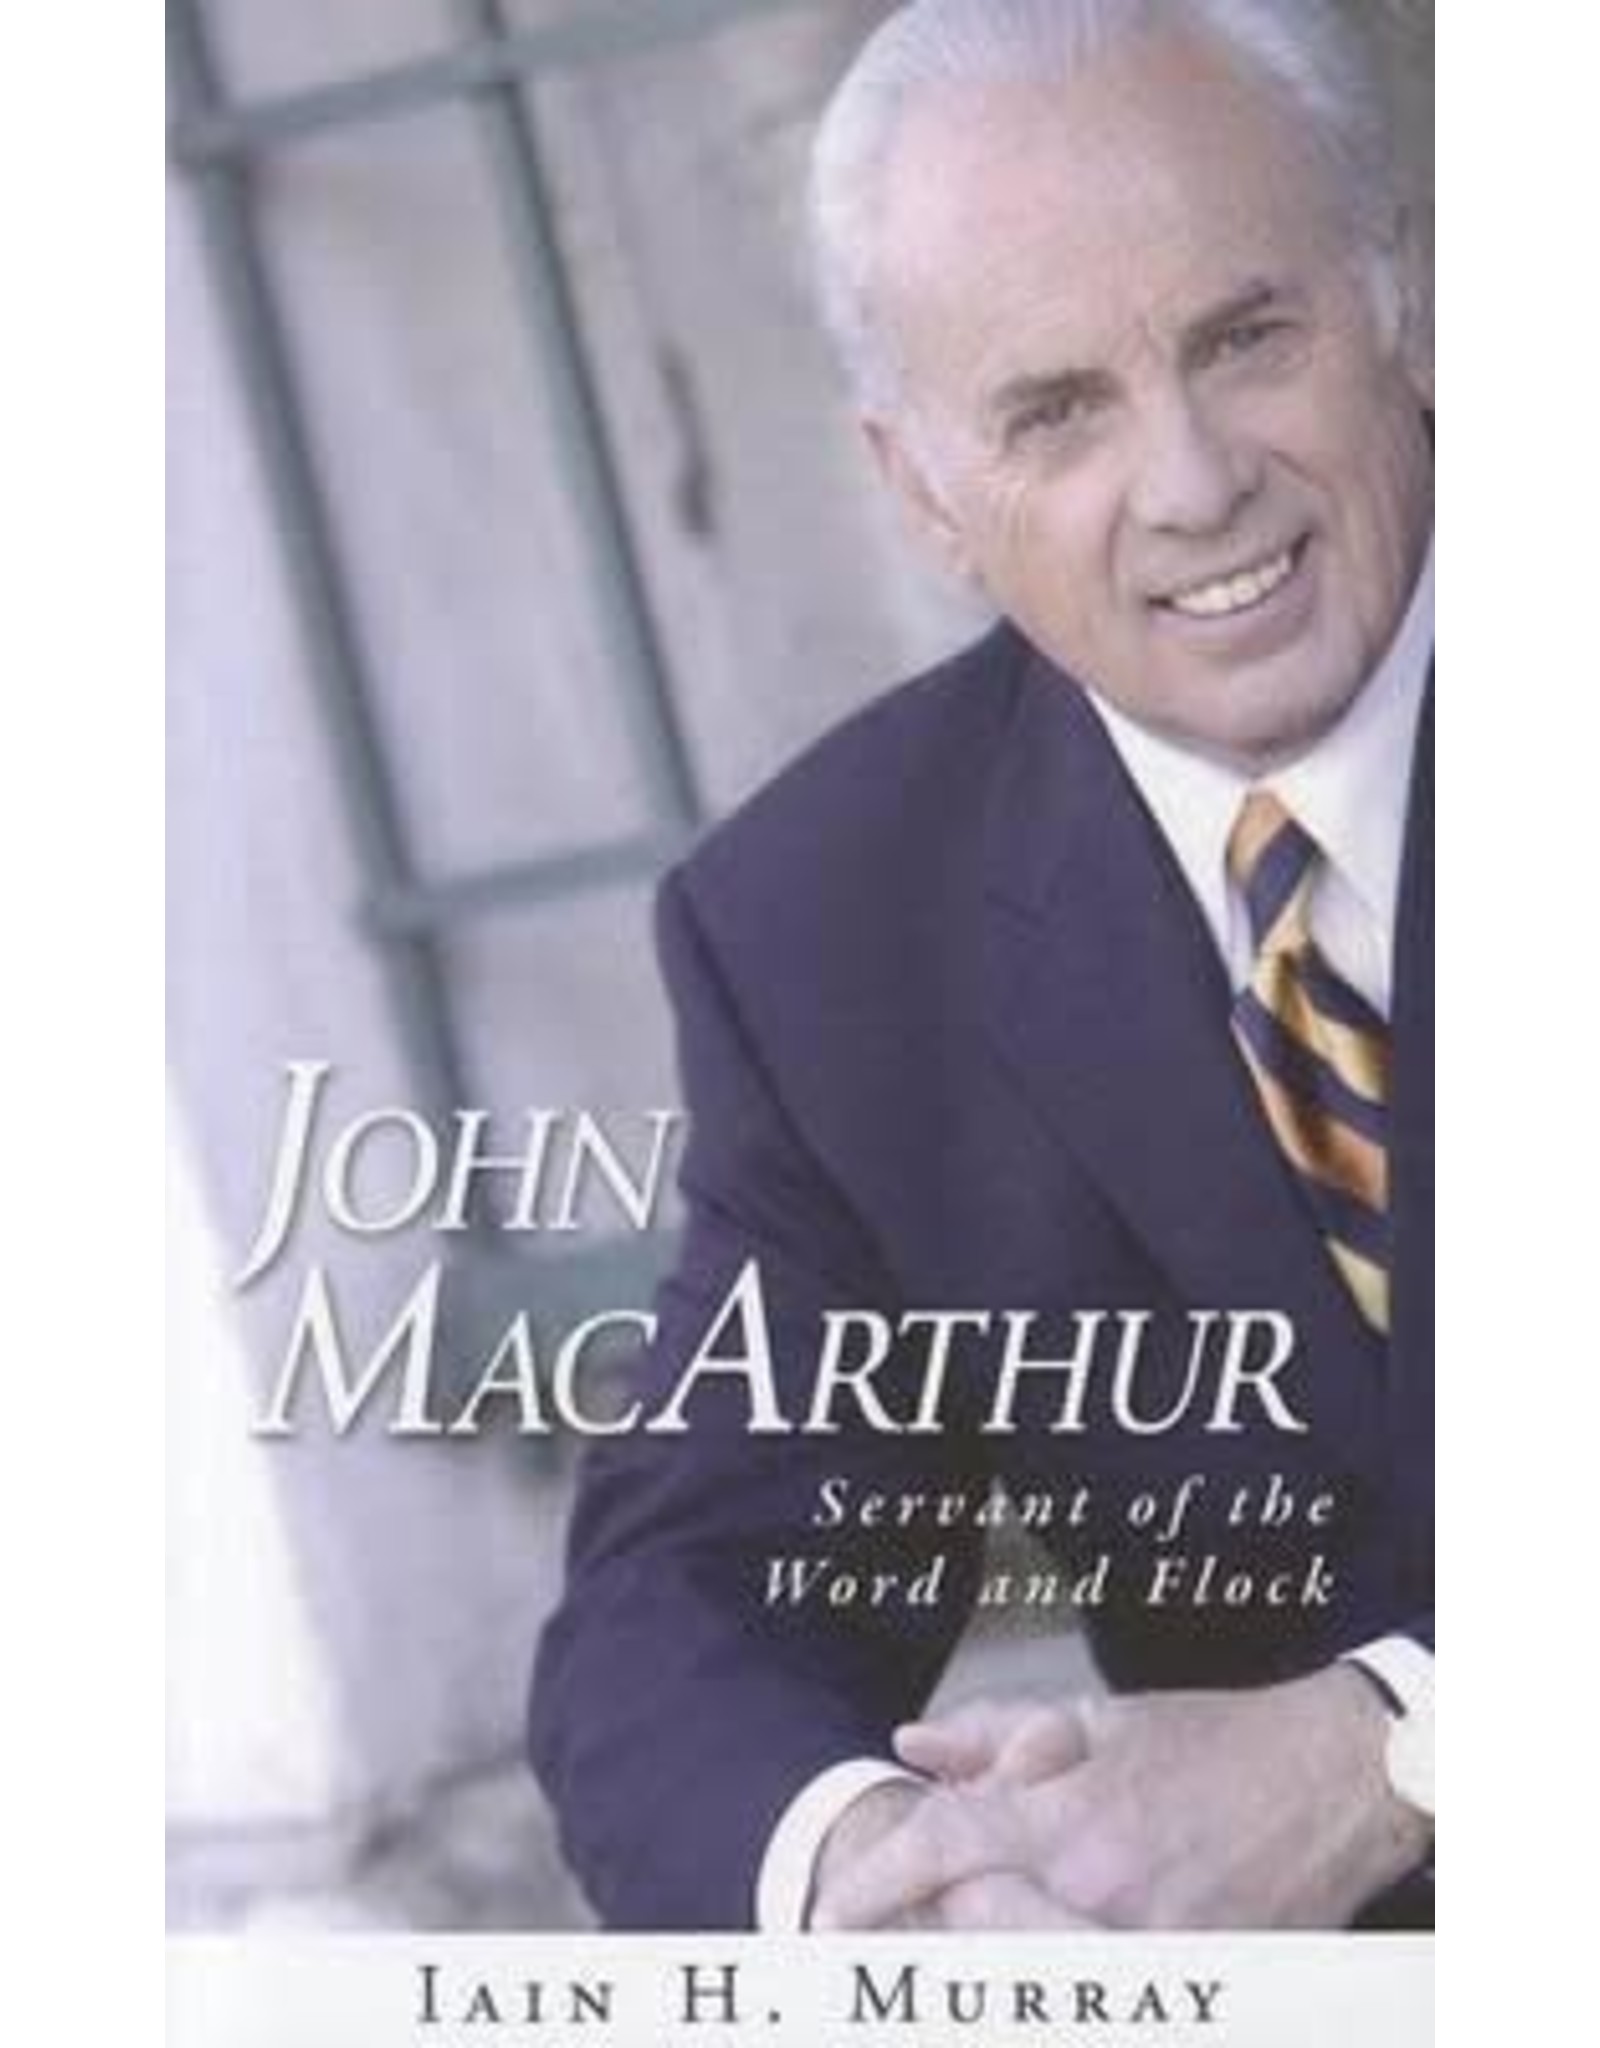 Iain H Murray John MacArthur Servant of the Word and Flock